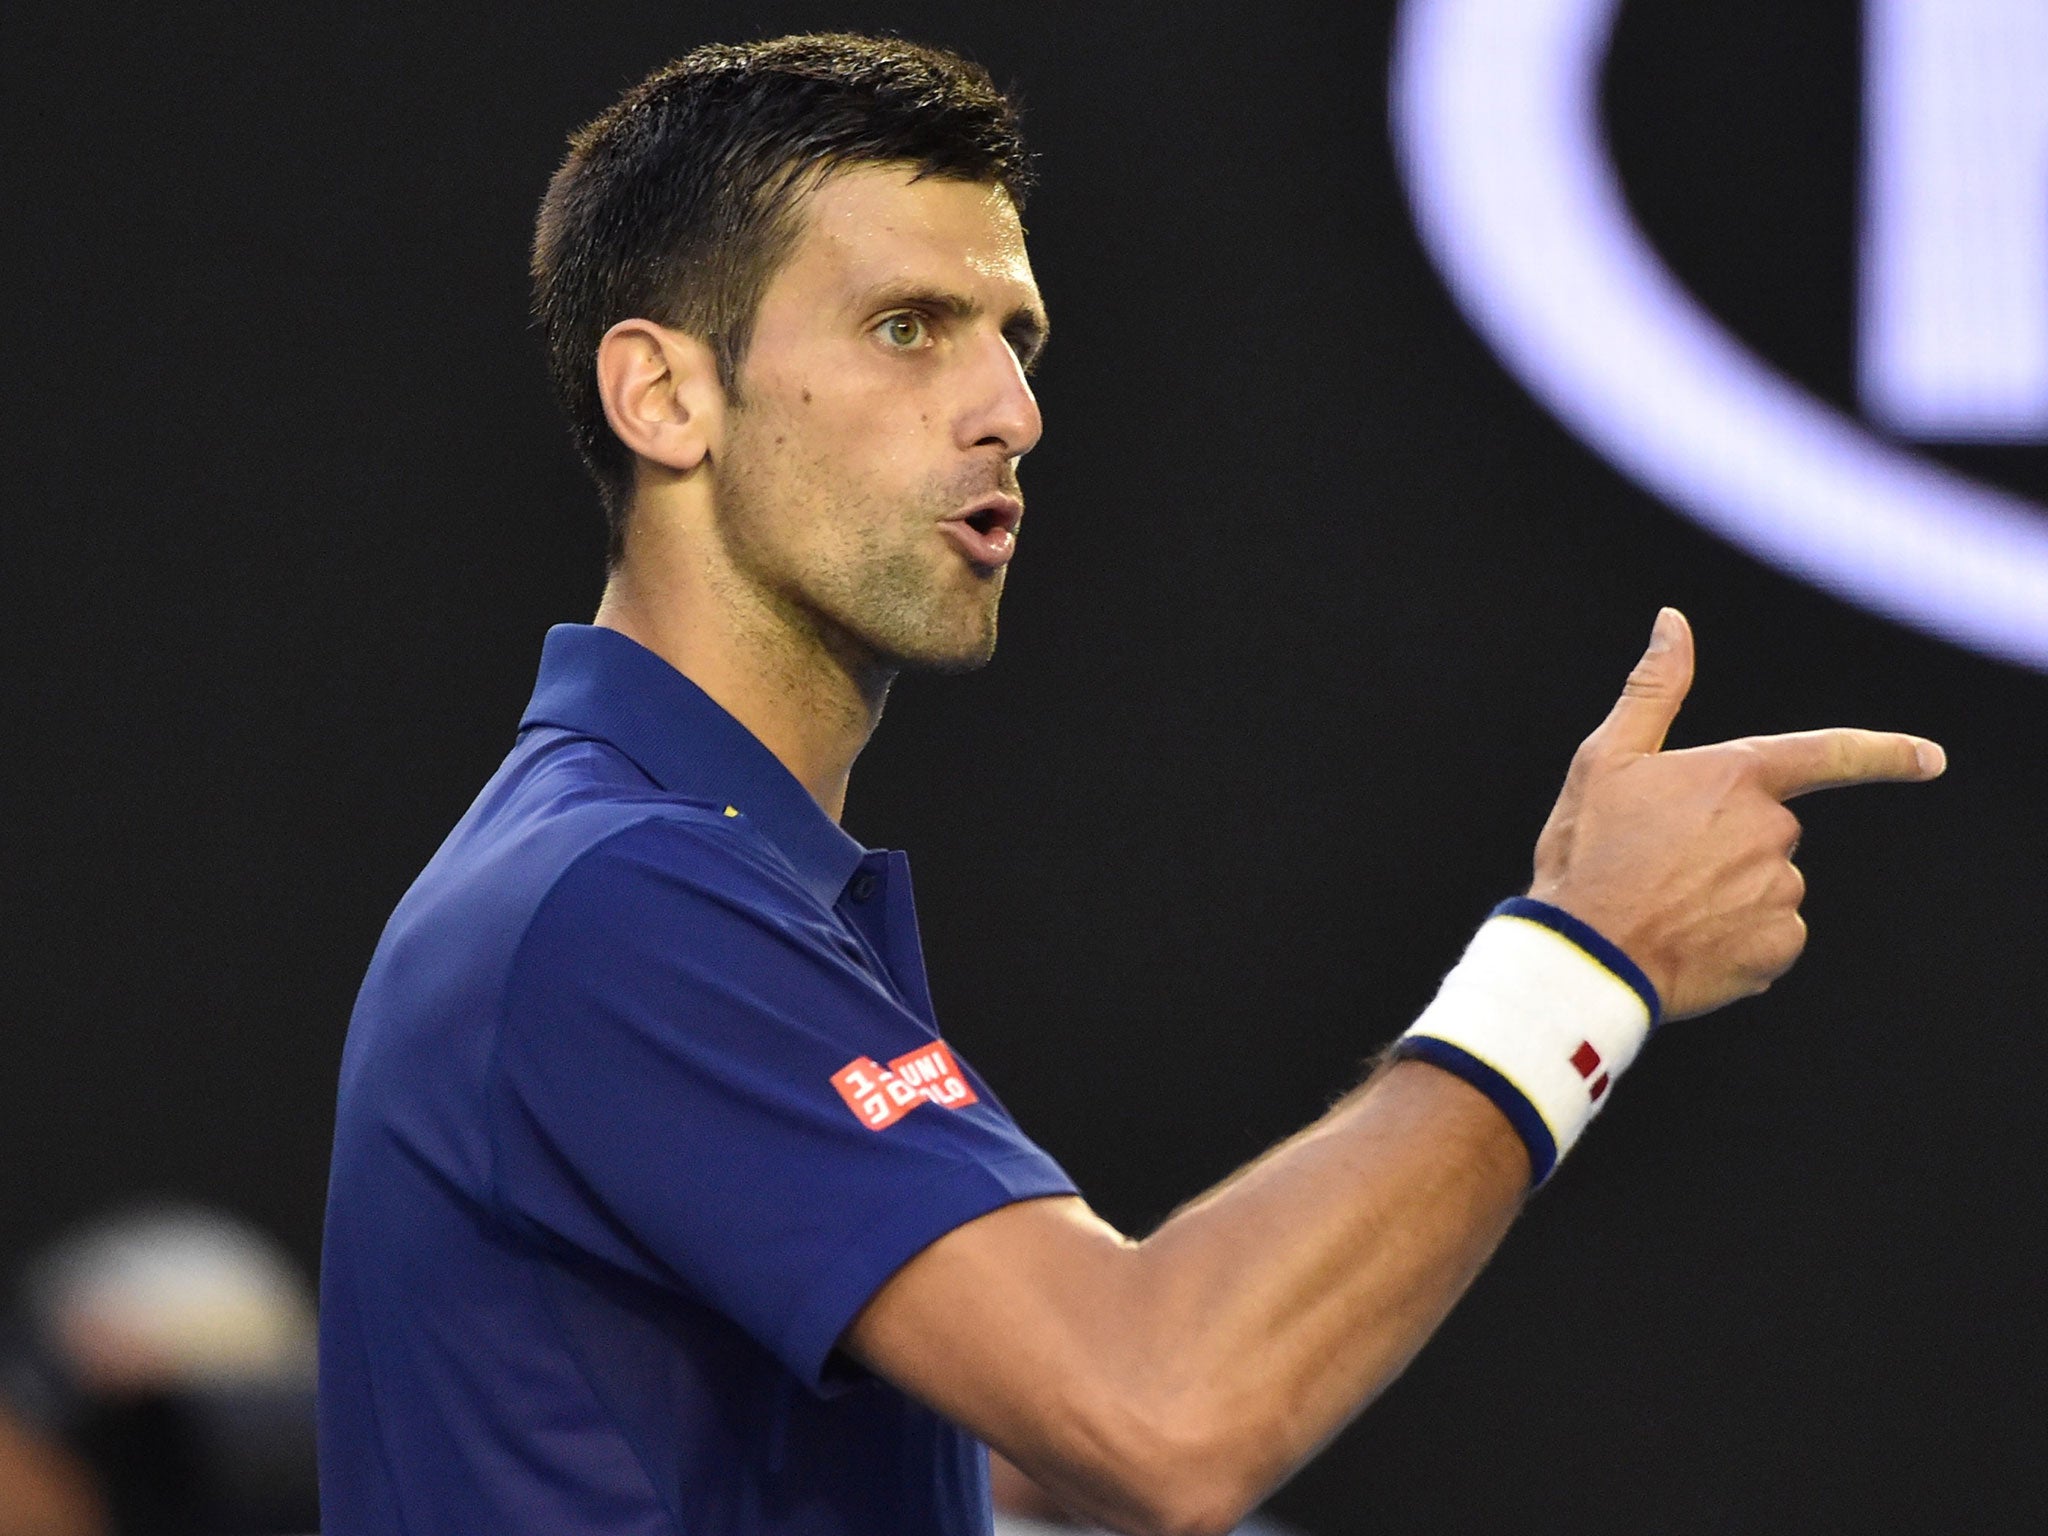 Novak Djokovic beat Kei Nishikori in the Australian Open quarter-finals